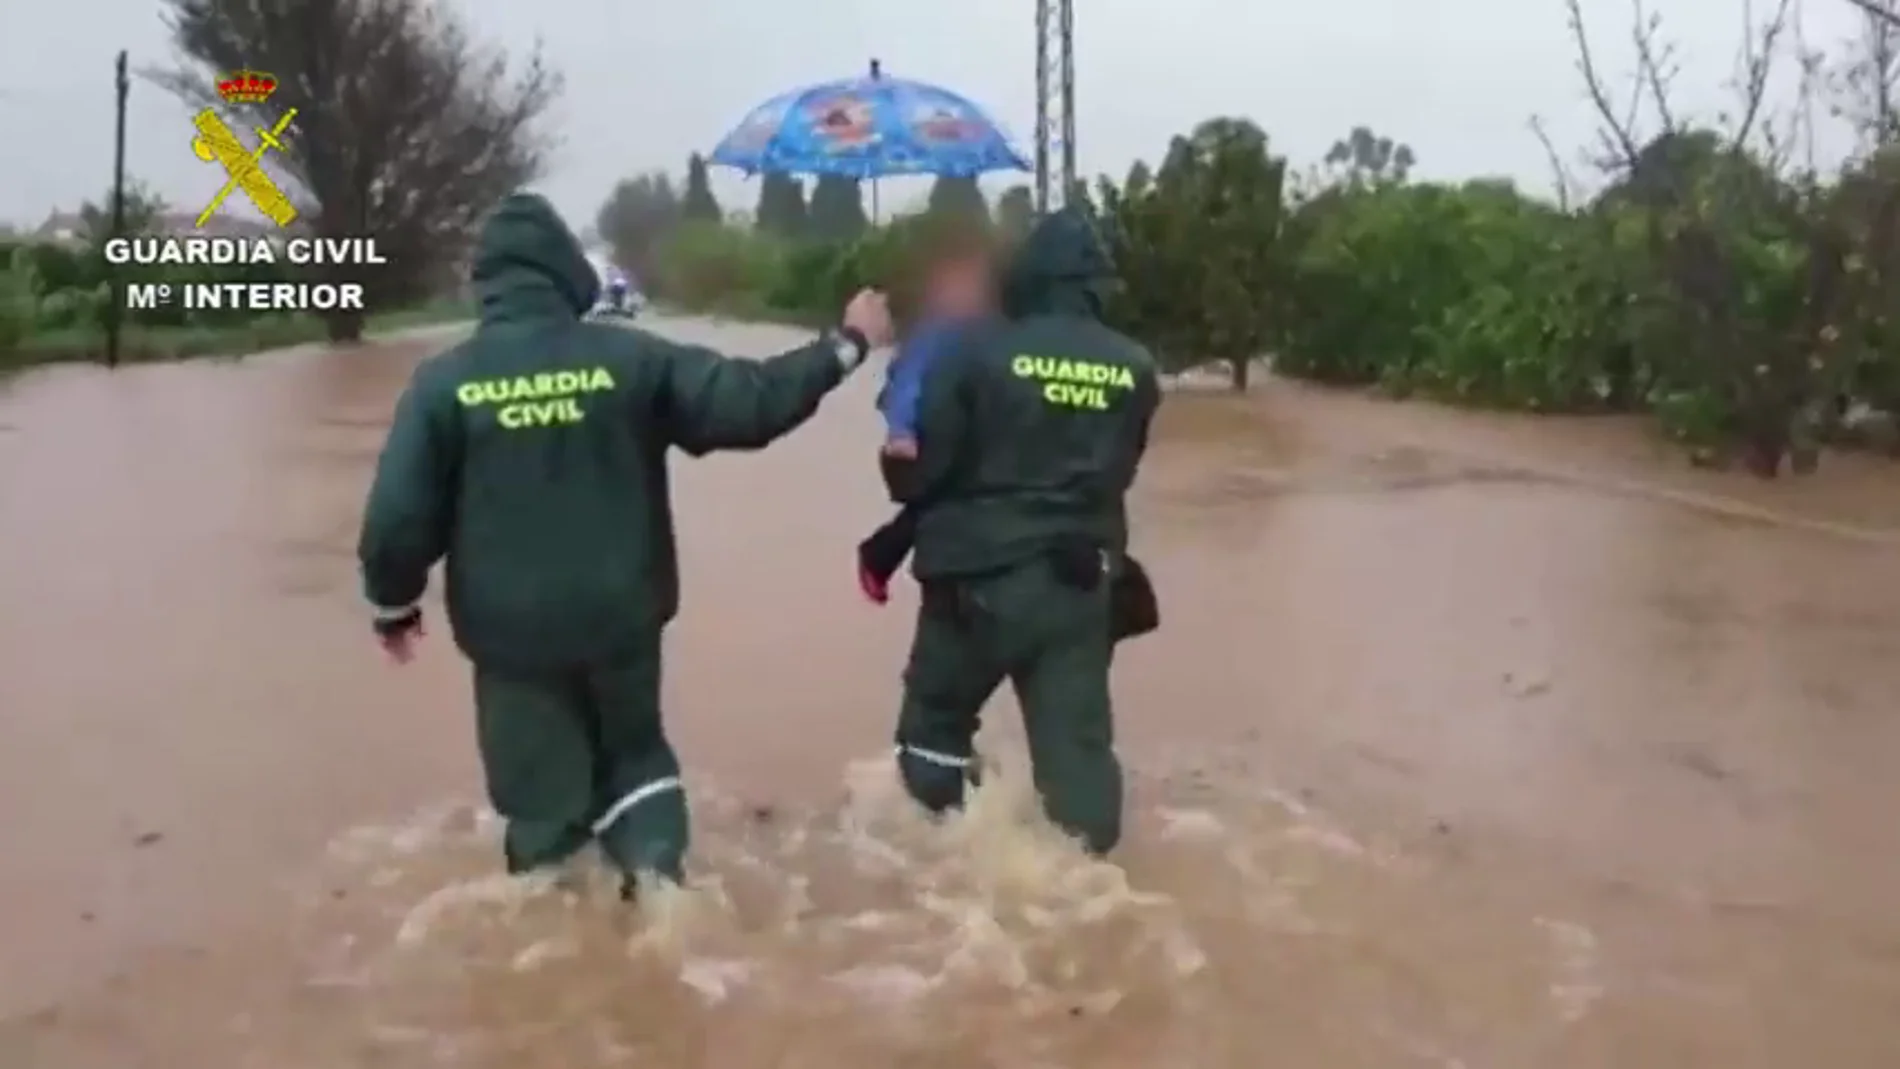 La heroica hazaña de la guardia civil en valencia: rescata a una familia de las inundaciones